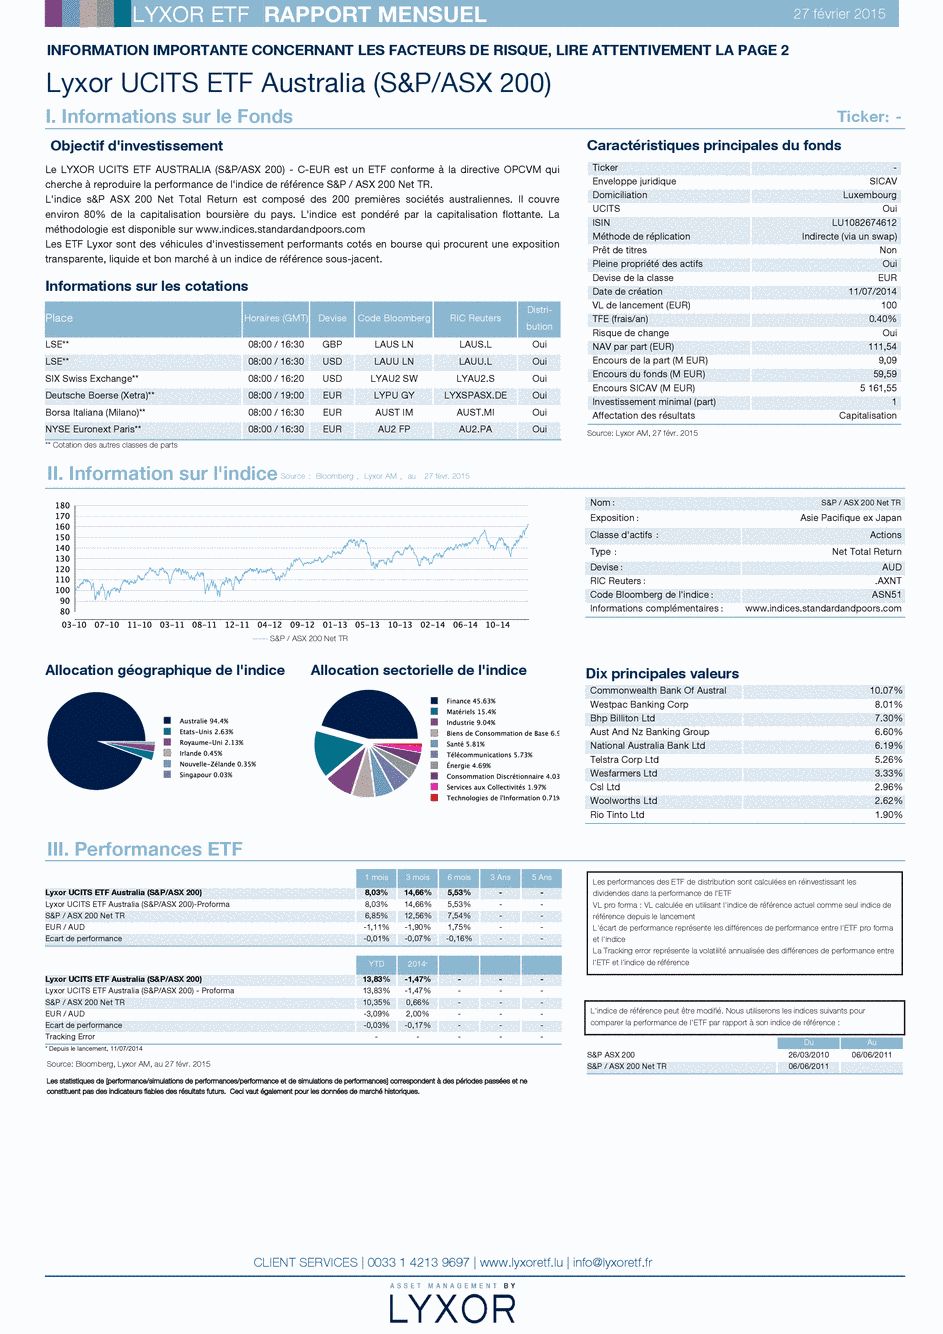 Reporting LYXOR UCITS ETF AUSTRALIA (S&P/ASX 200) - C-EUR - 28/02/2015 - Français